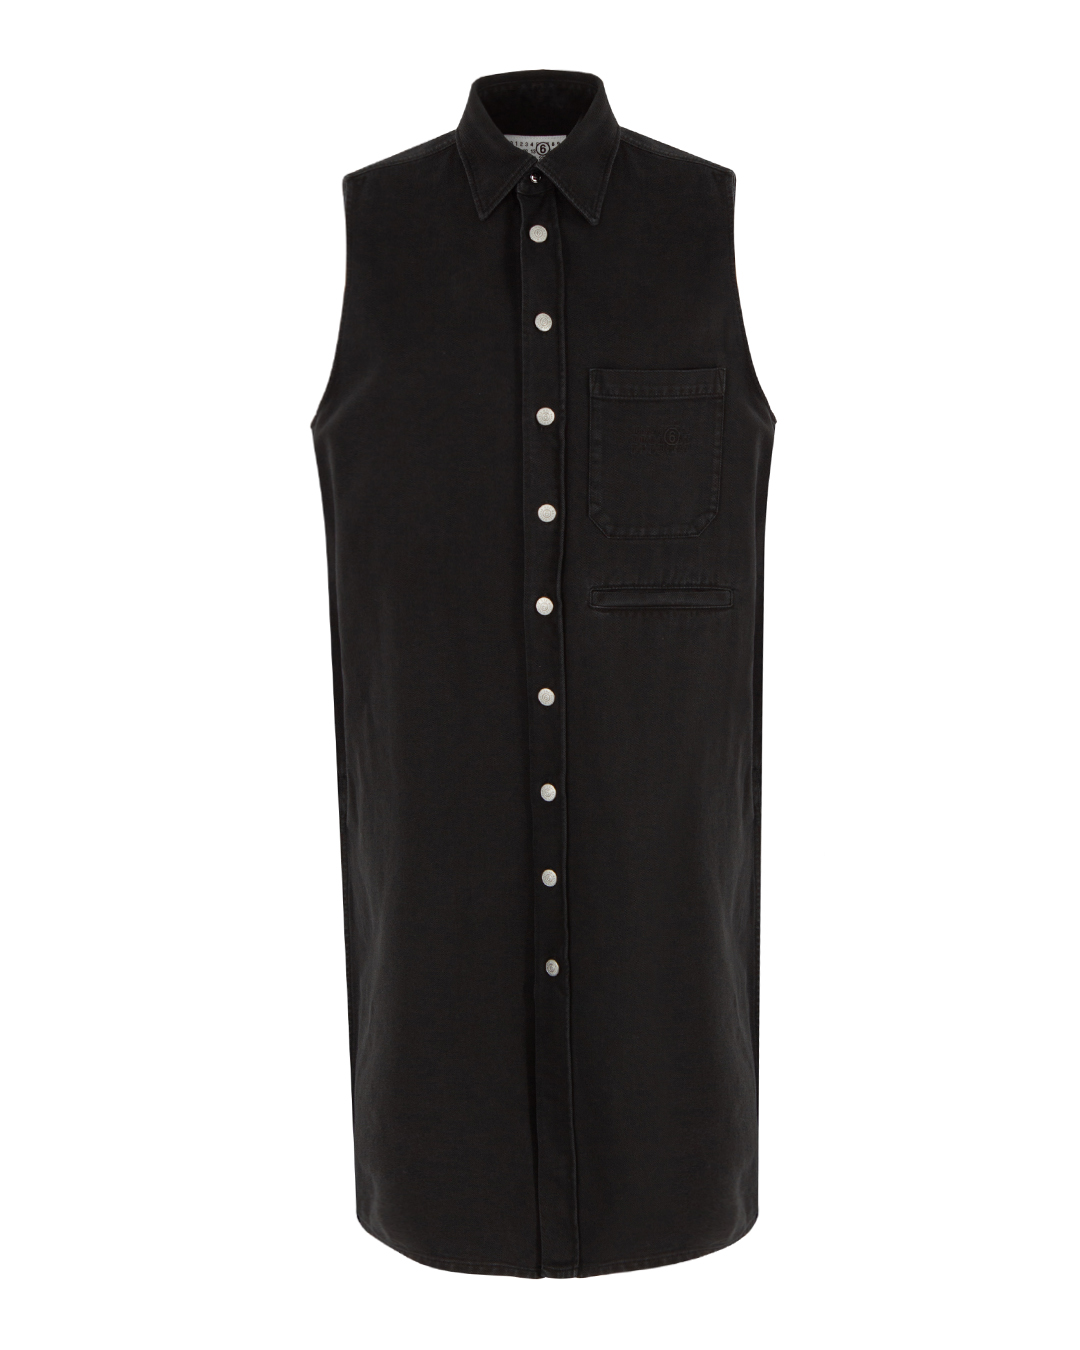 платье MM6 Maison Margiela S62DG0016 черный 40, размер 40